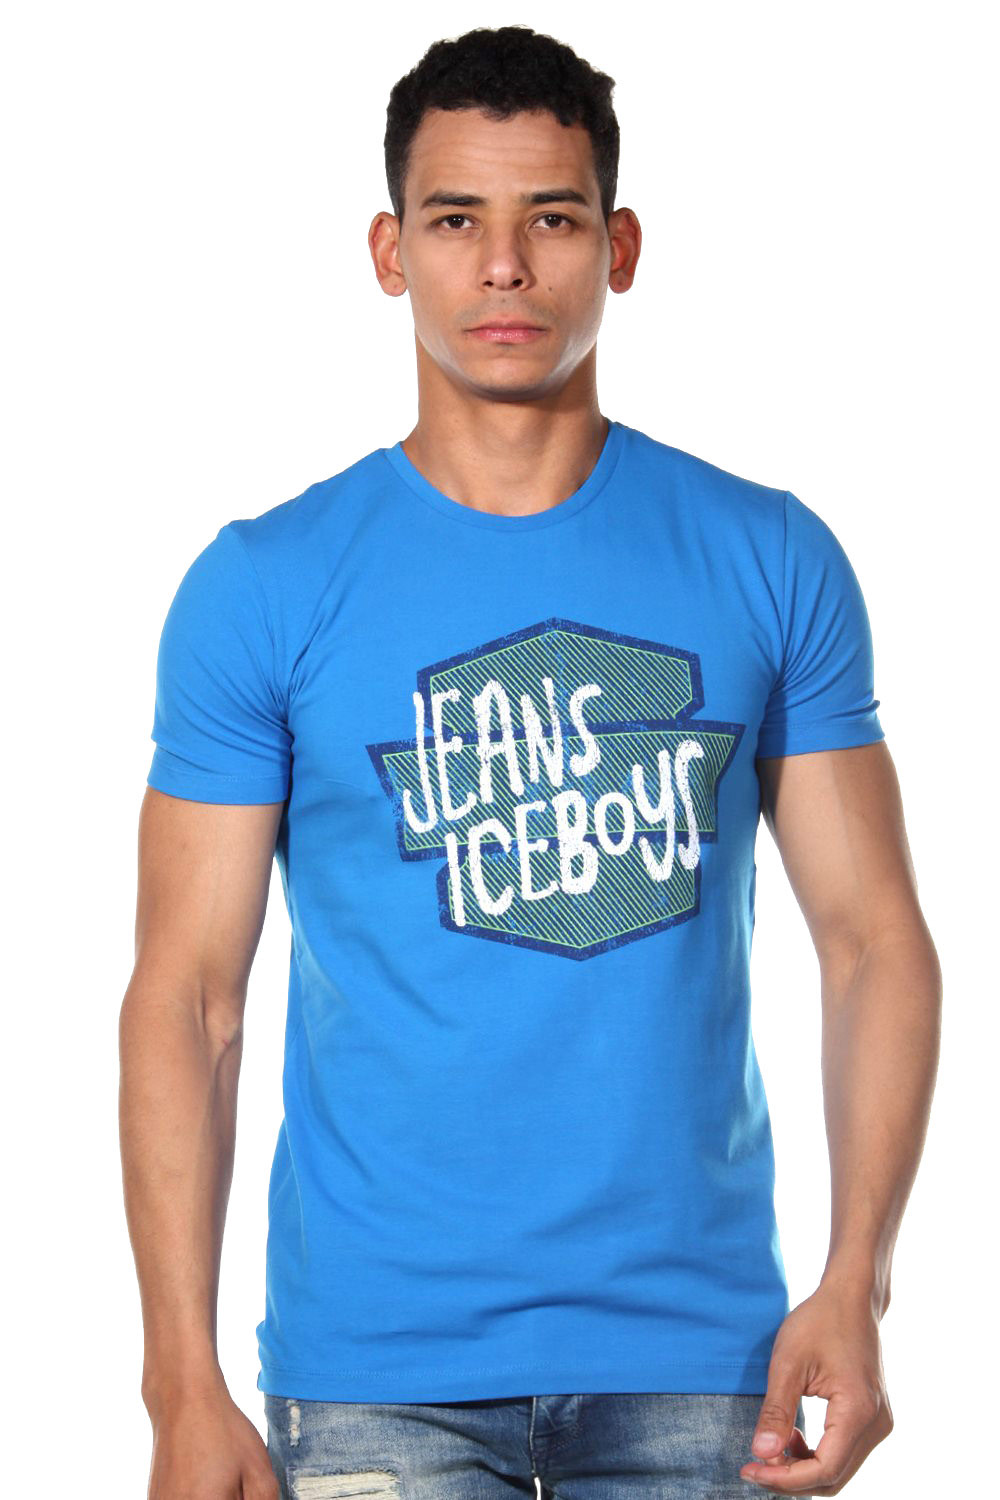 ICEBOYS T-shirt at oboy.com